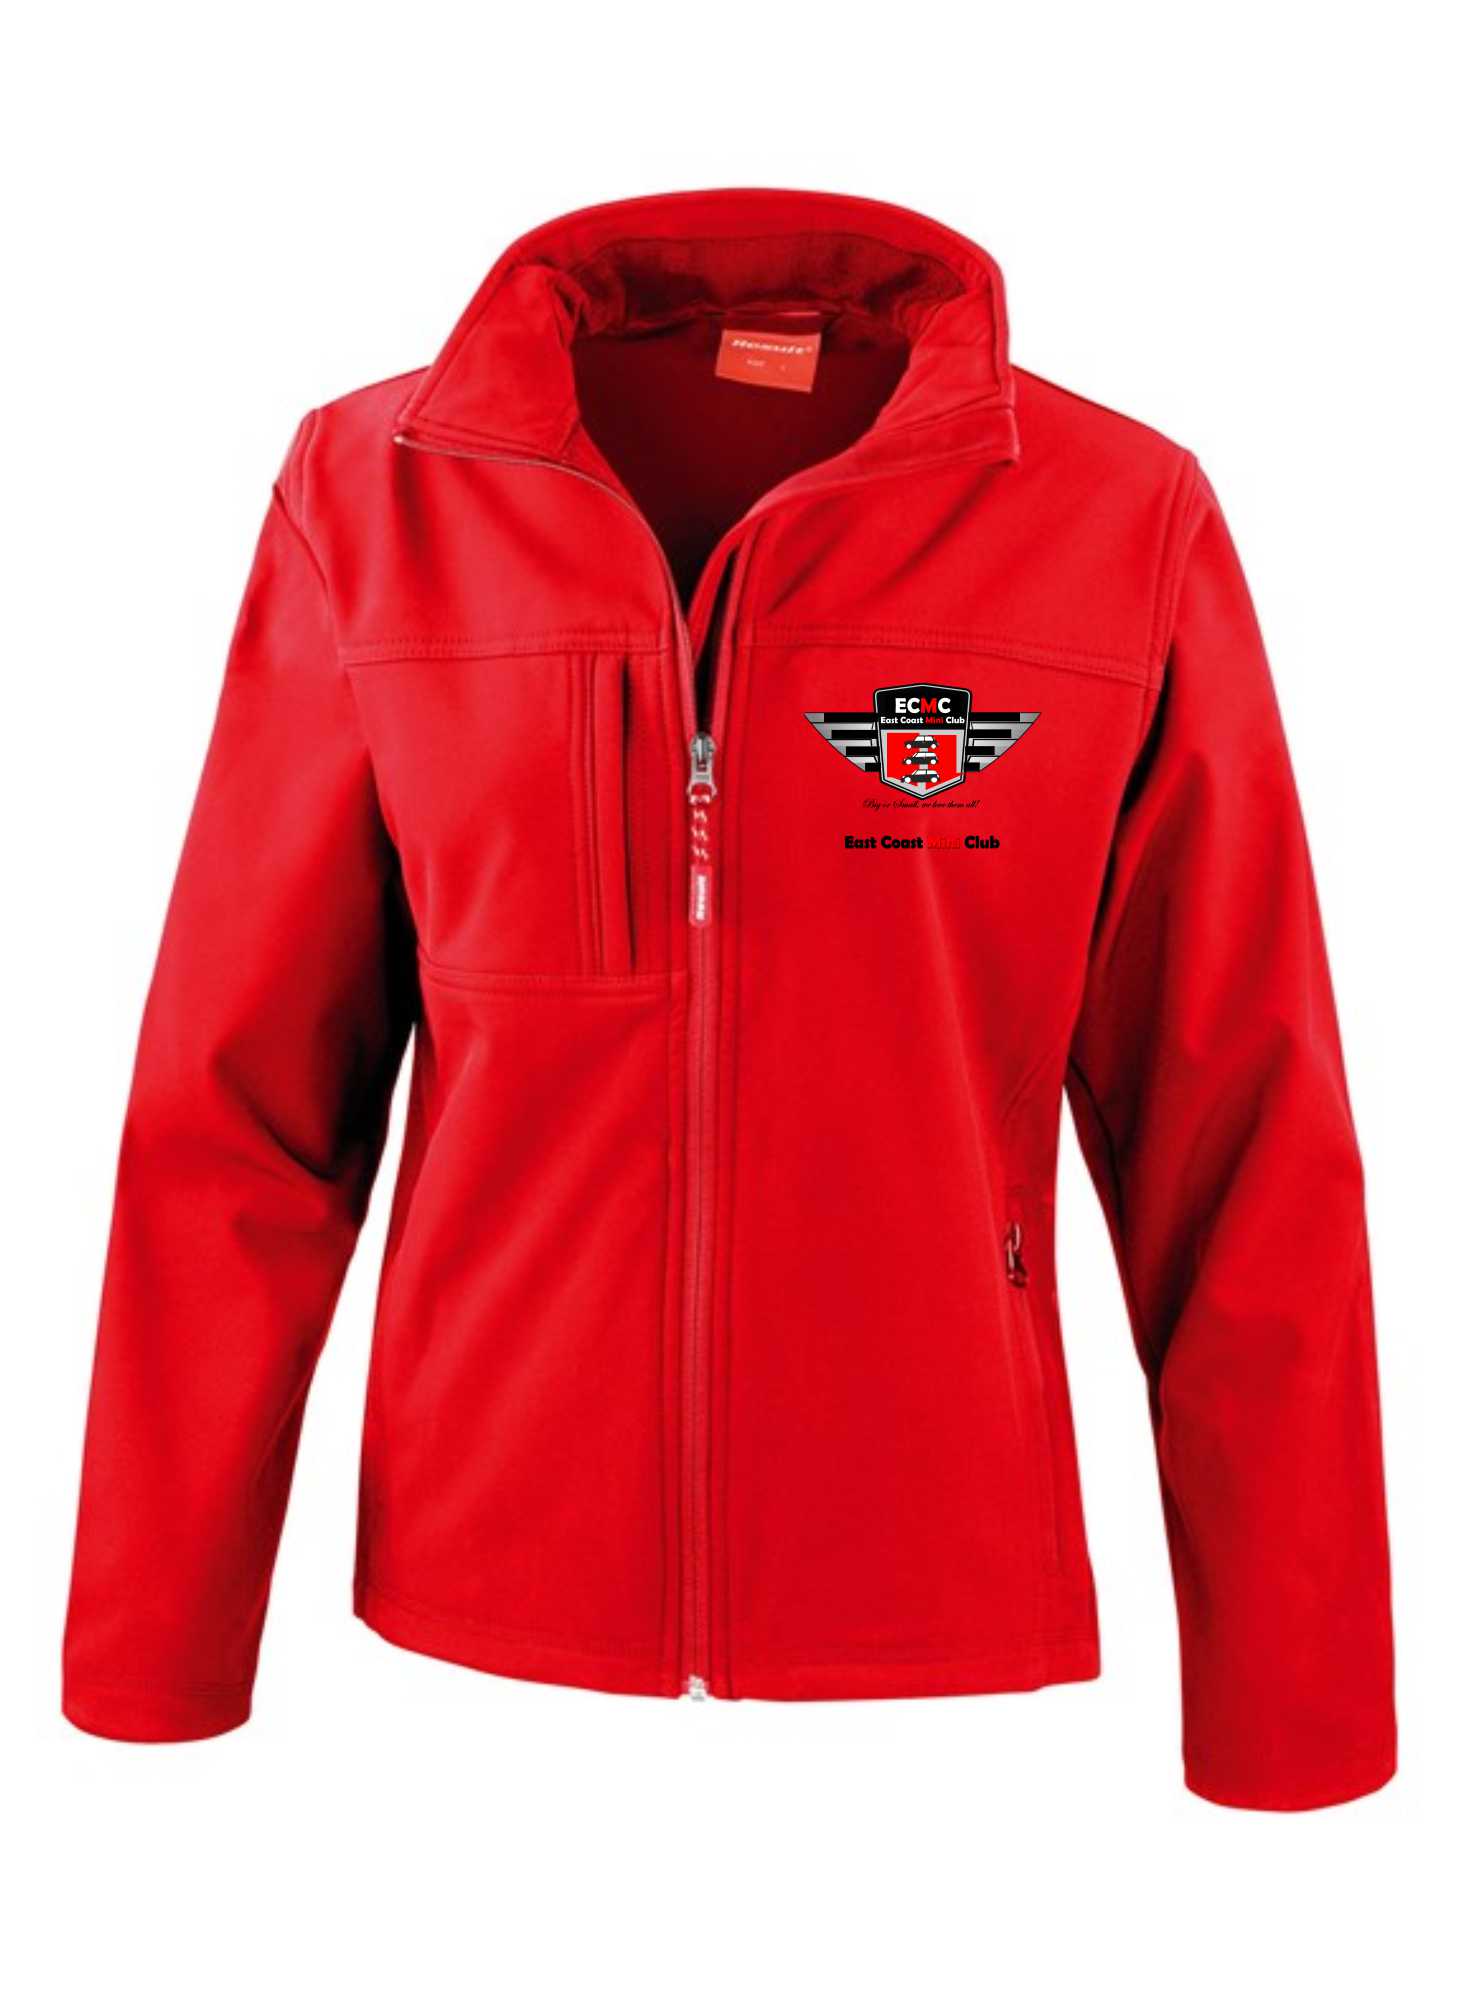 East Coast Mini Club – Premium Softshell Jacket (Ladies)